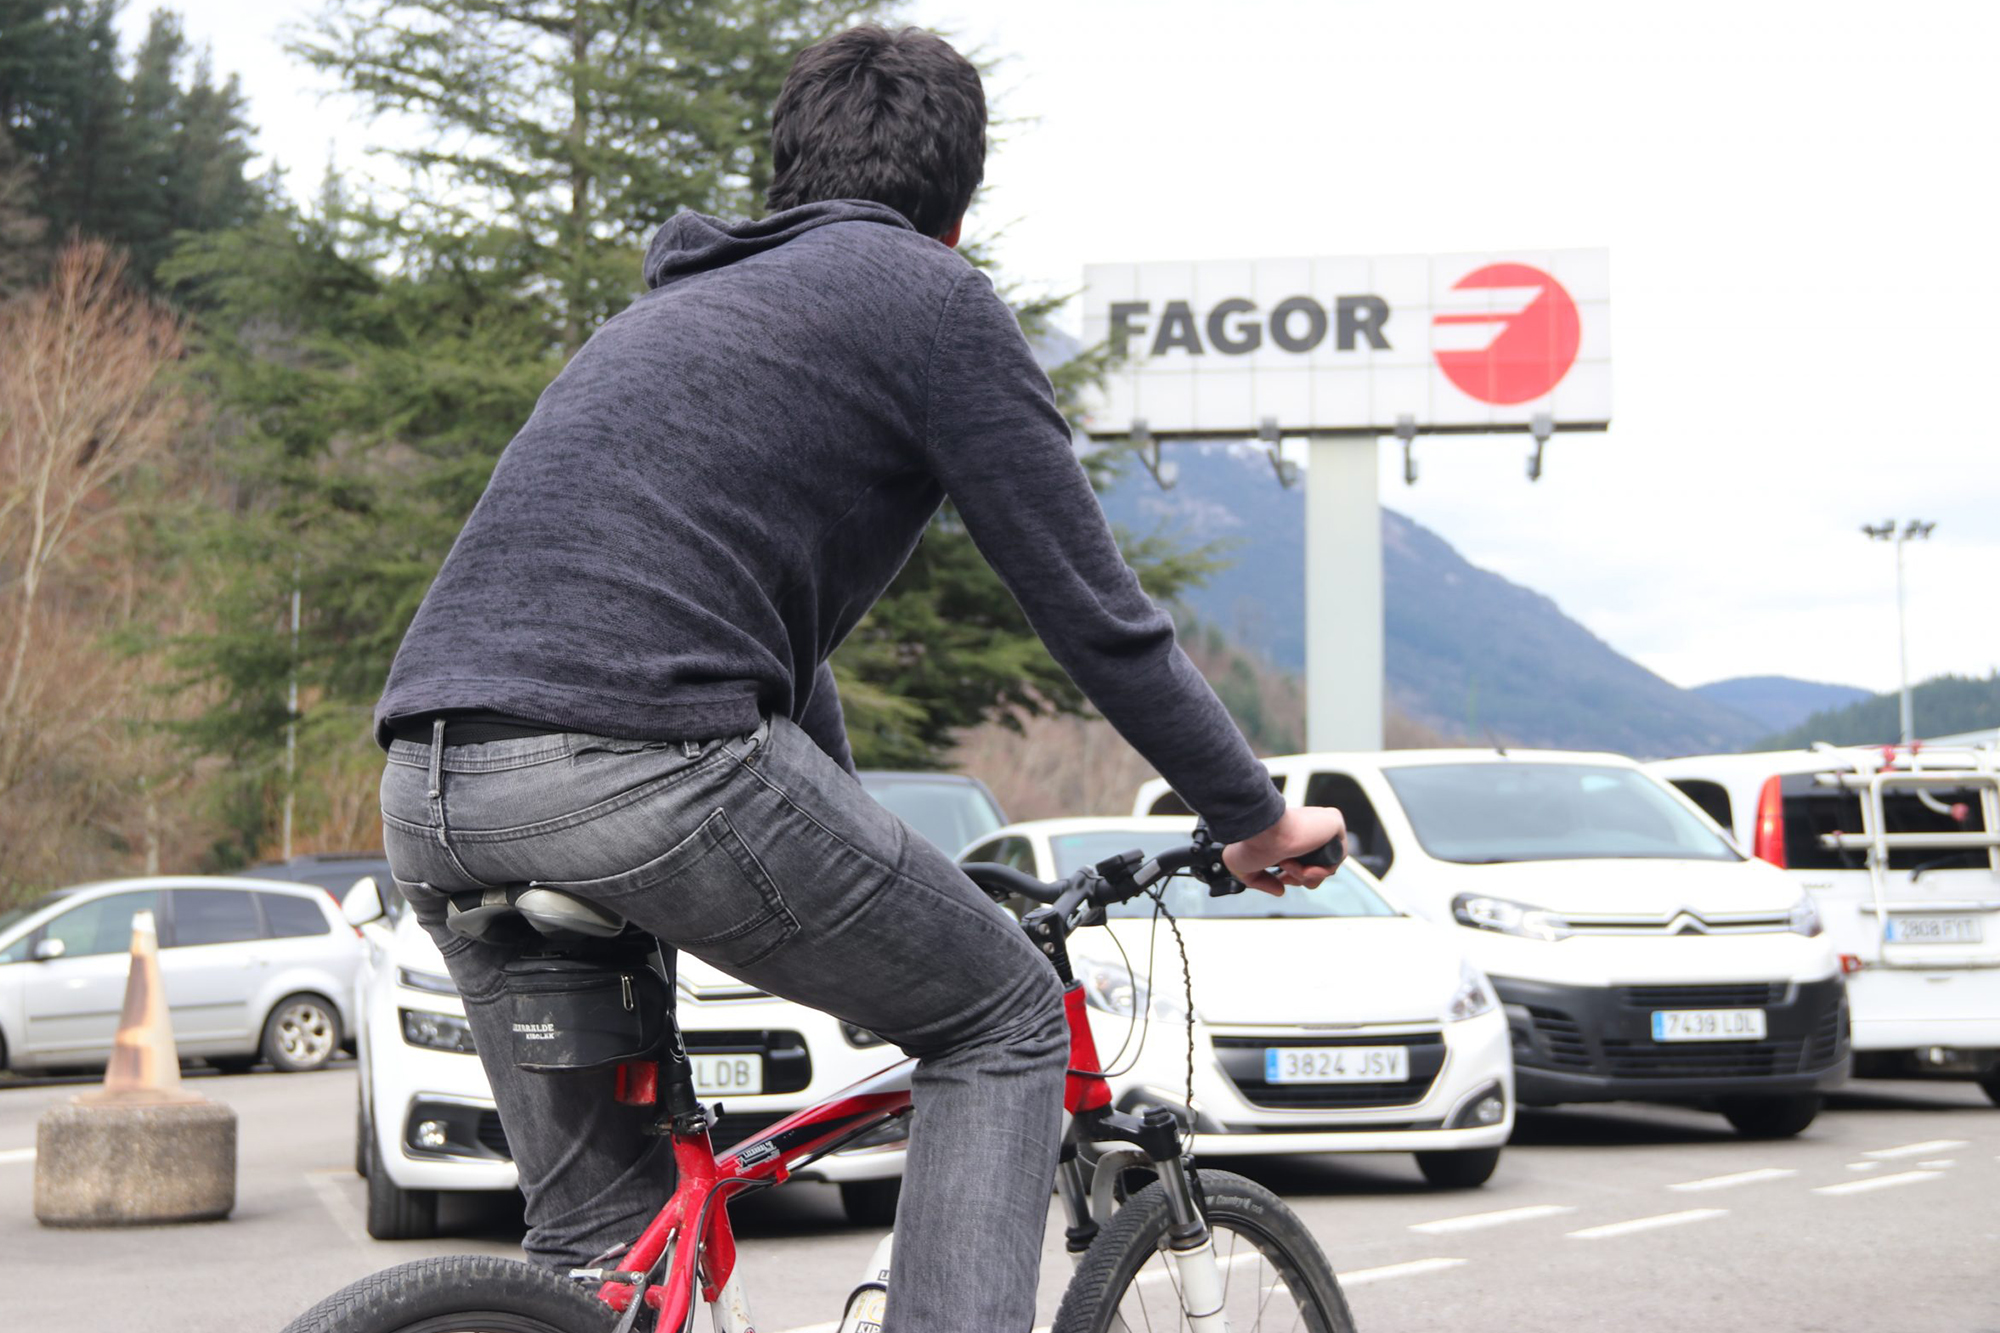 El Grupo Fagor diseñará un plan de movilidad sostenible basándose en el proyecto Fagor Mugi